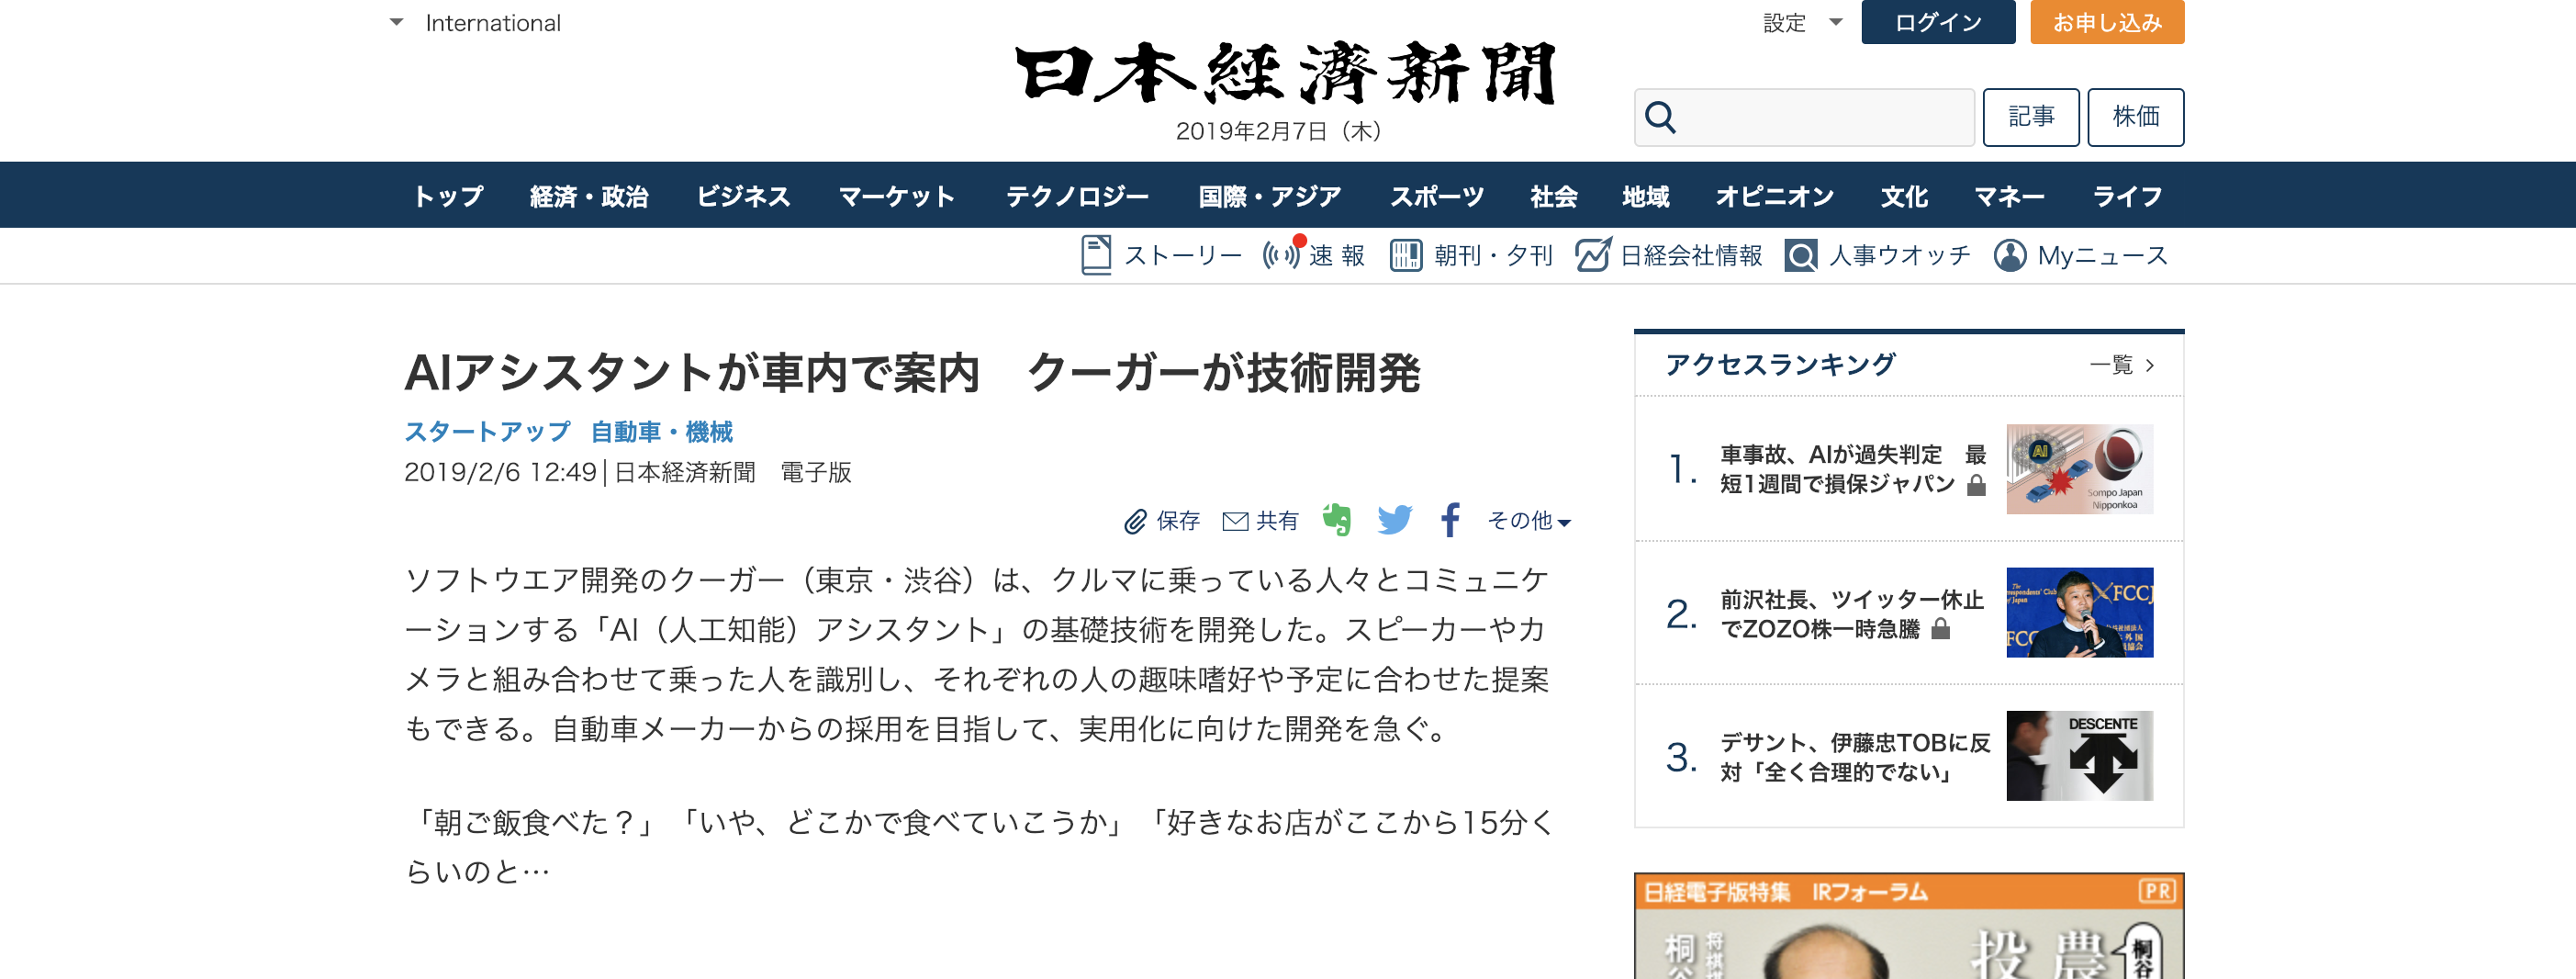 Couger's "Virtual Human Agent (VHA)" featured in both the Nihon Keizai Shimbun electronic edition and Nikkei Sangyo Shimbun